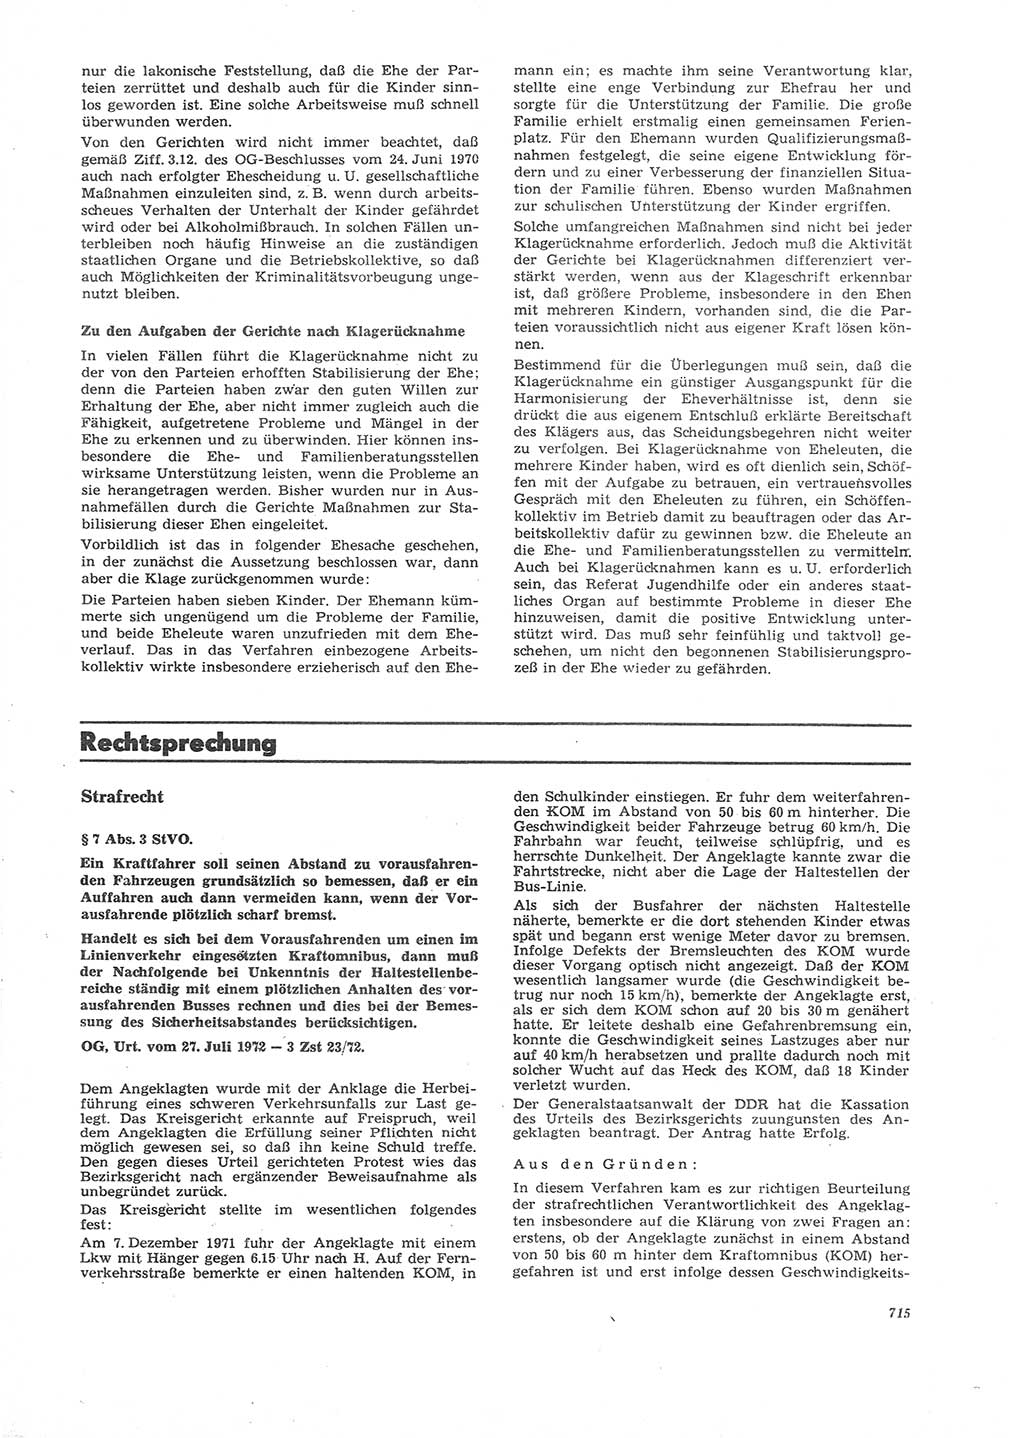 Neue Justiz (NJ), Zeitschrift für Recht und Rechtswissenschaft [Deutsche Demokratische Republik (DDR)], 26. Jahrgang 1972, Seite 715 (NJ DDR 1972, S. 715)